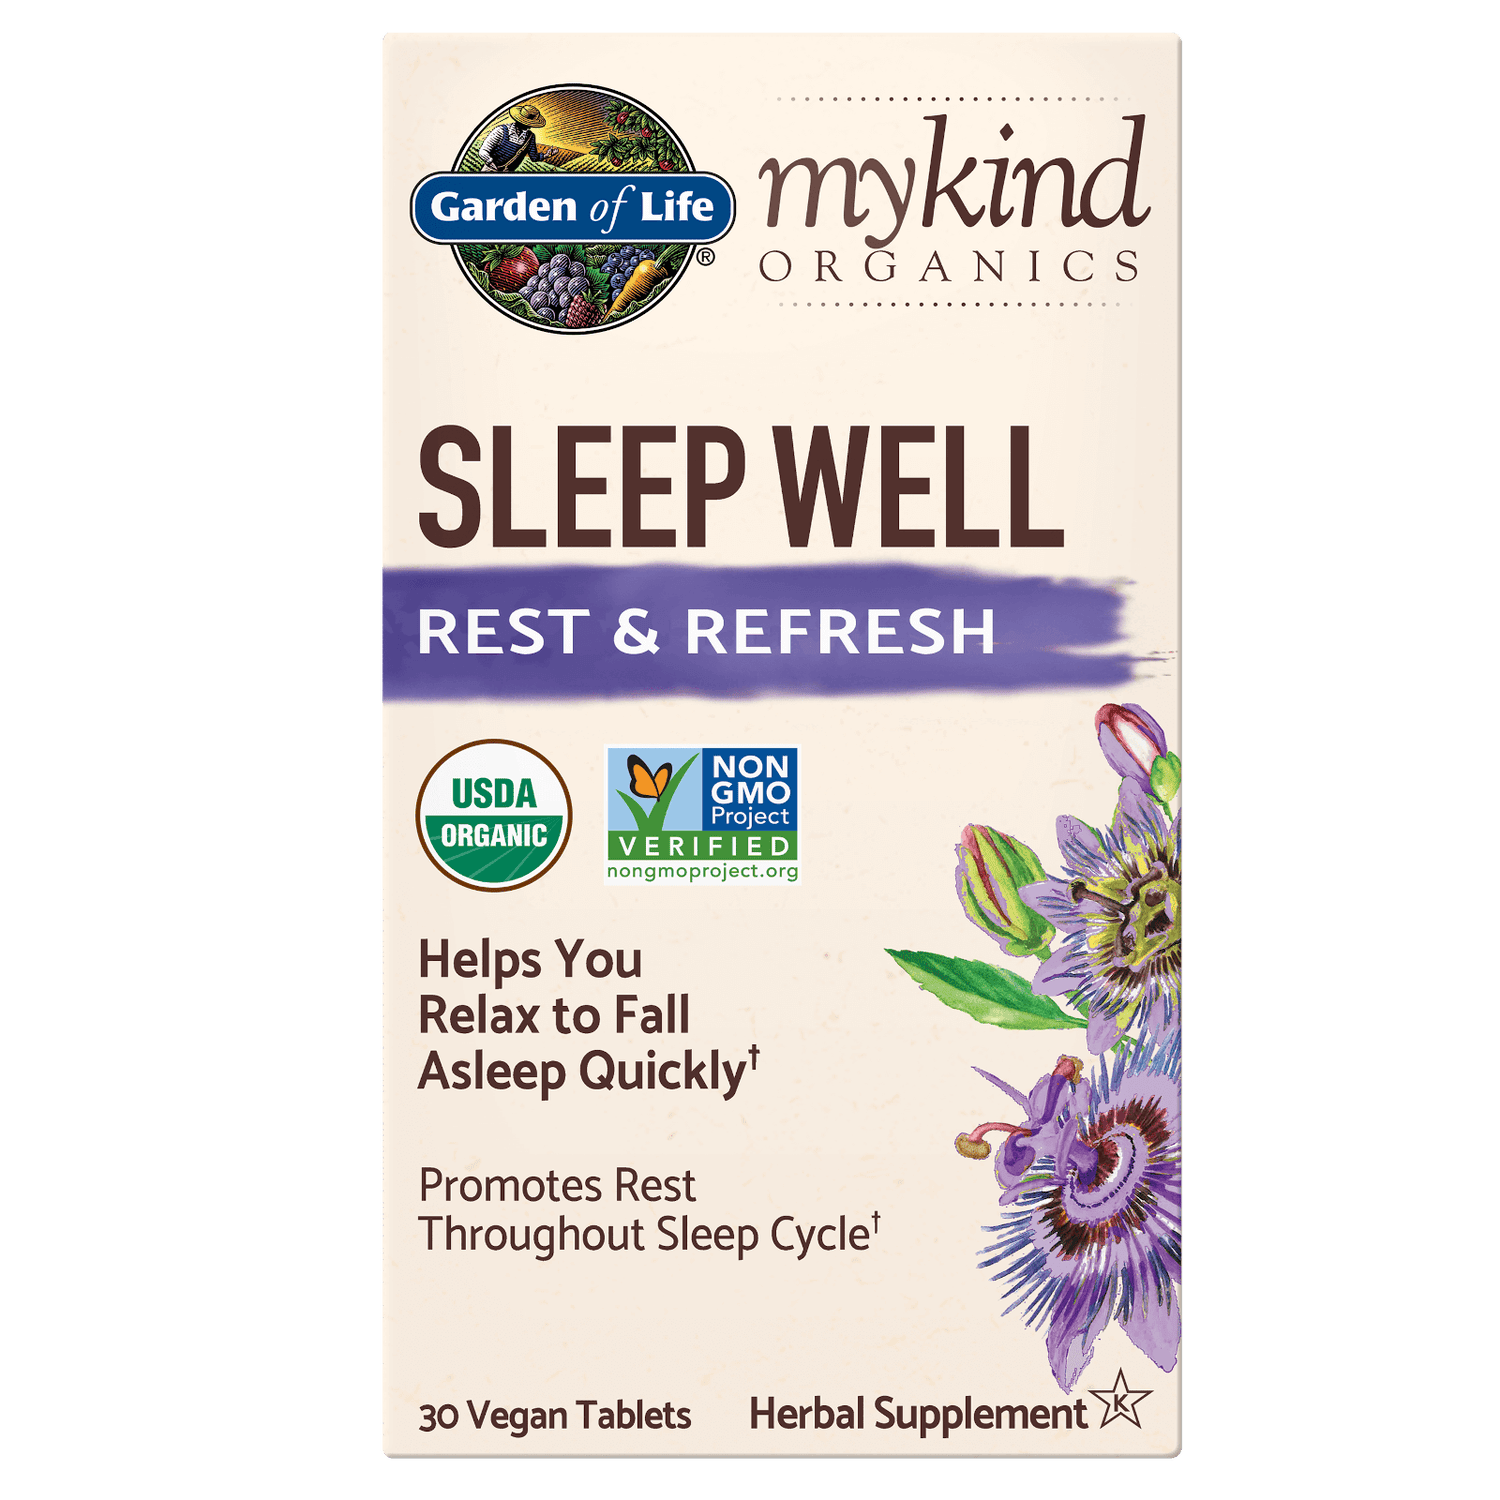 Comprimidos herbales de noche mykind Organics - 30 comprimidos